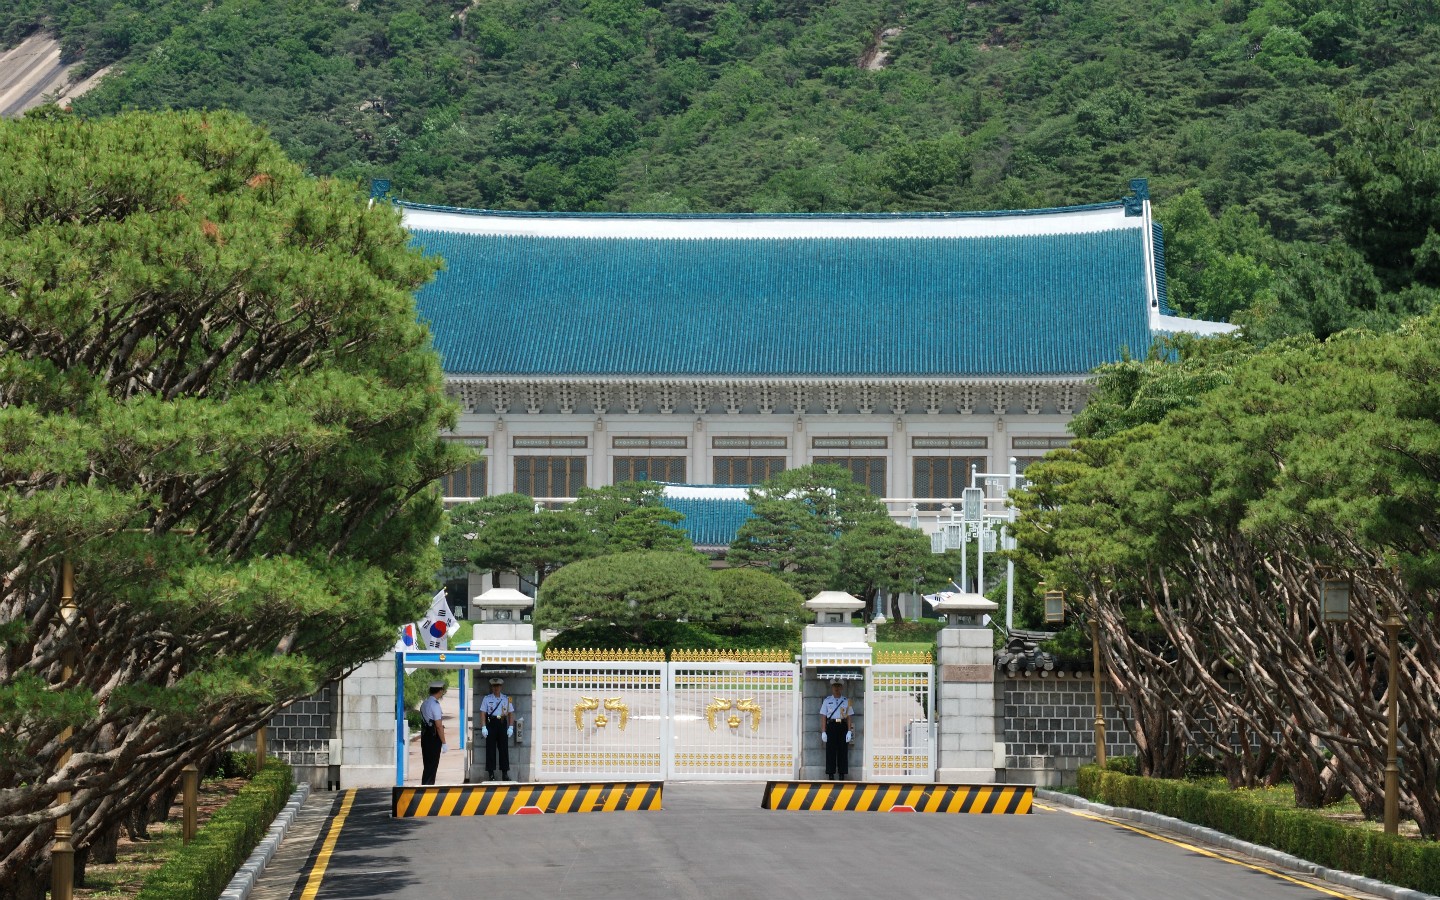 Trải nghiệm du lịch tuyệt vời tại Nhà Xanh (Blue House) - biểu tượng văn hóa Hàn Quốc